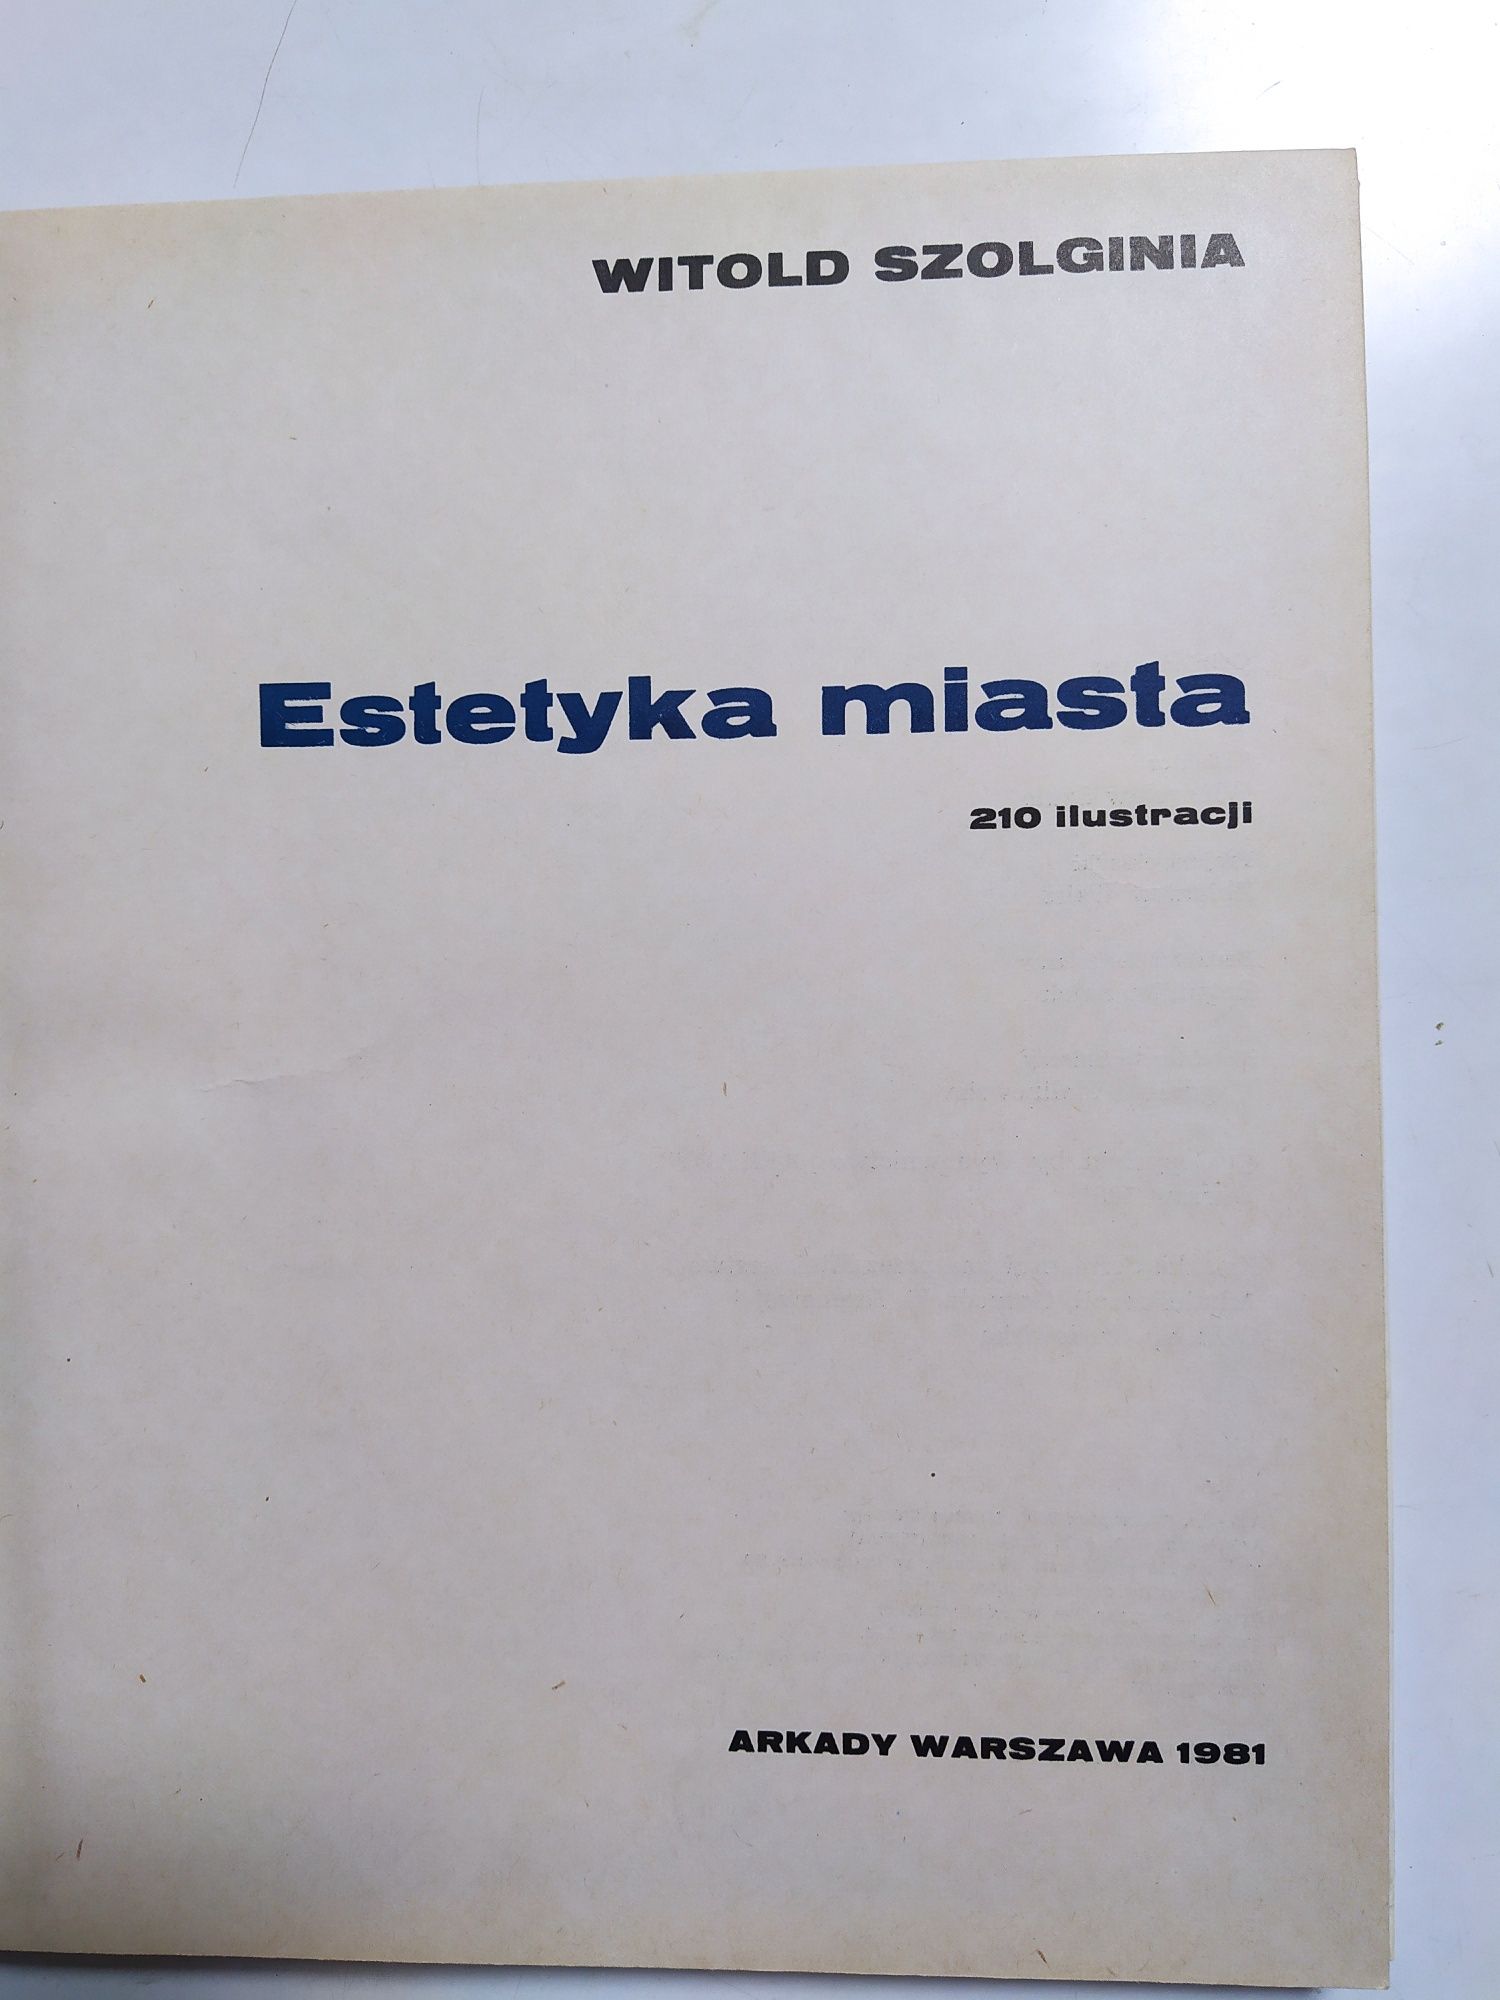 Продам книги по архитектуре Польши на польском языке и Чехии